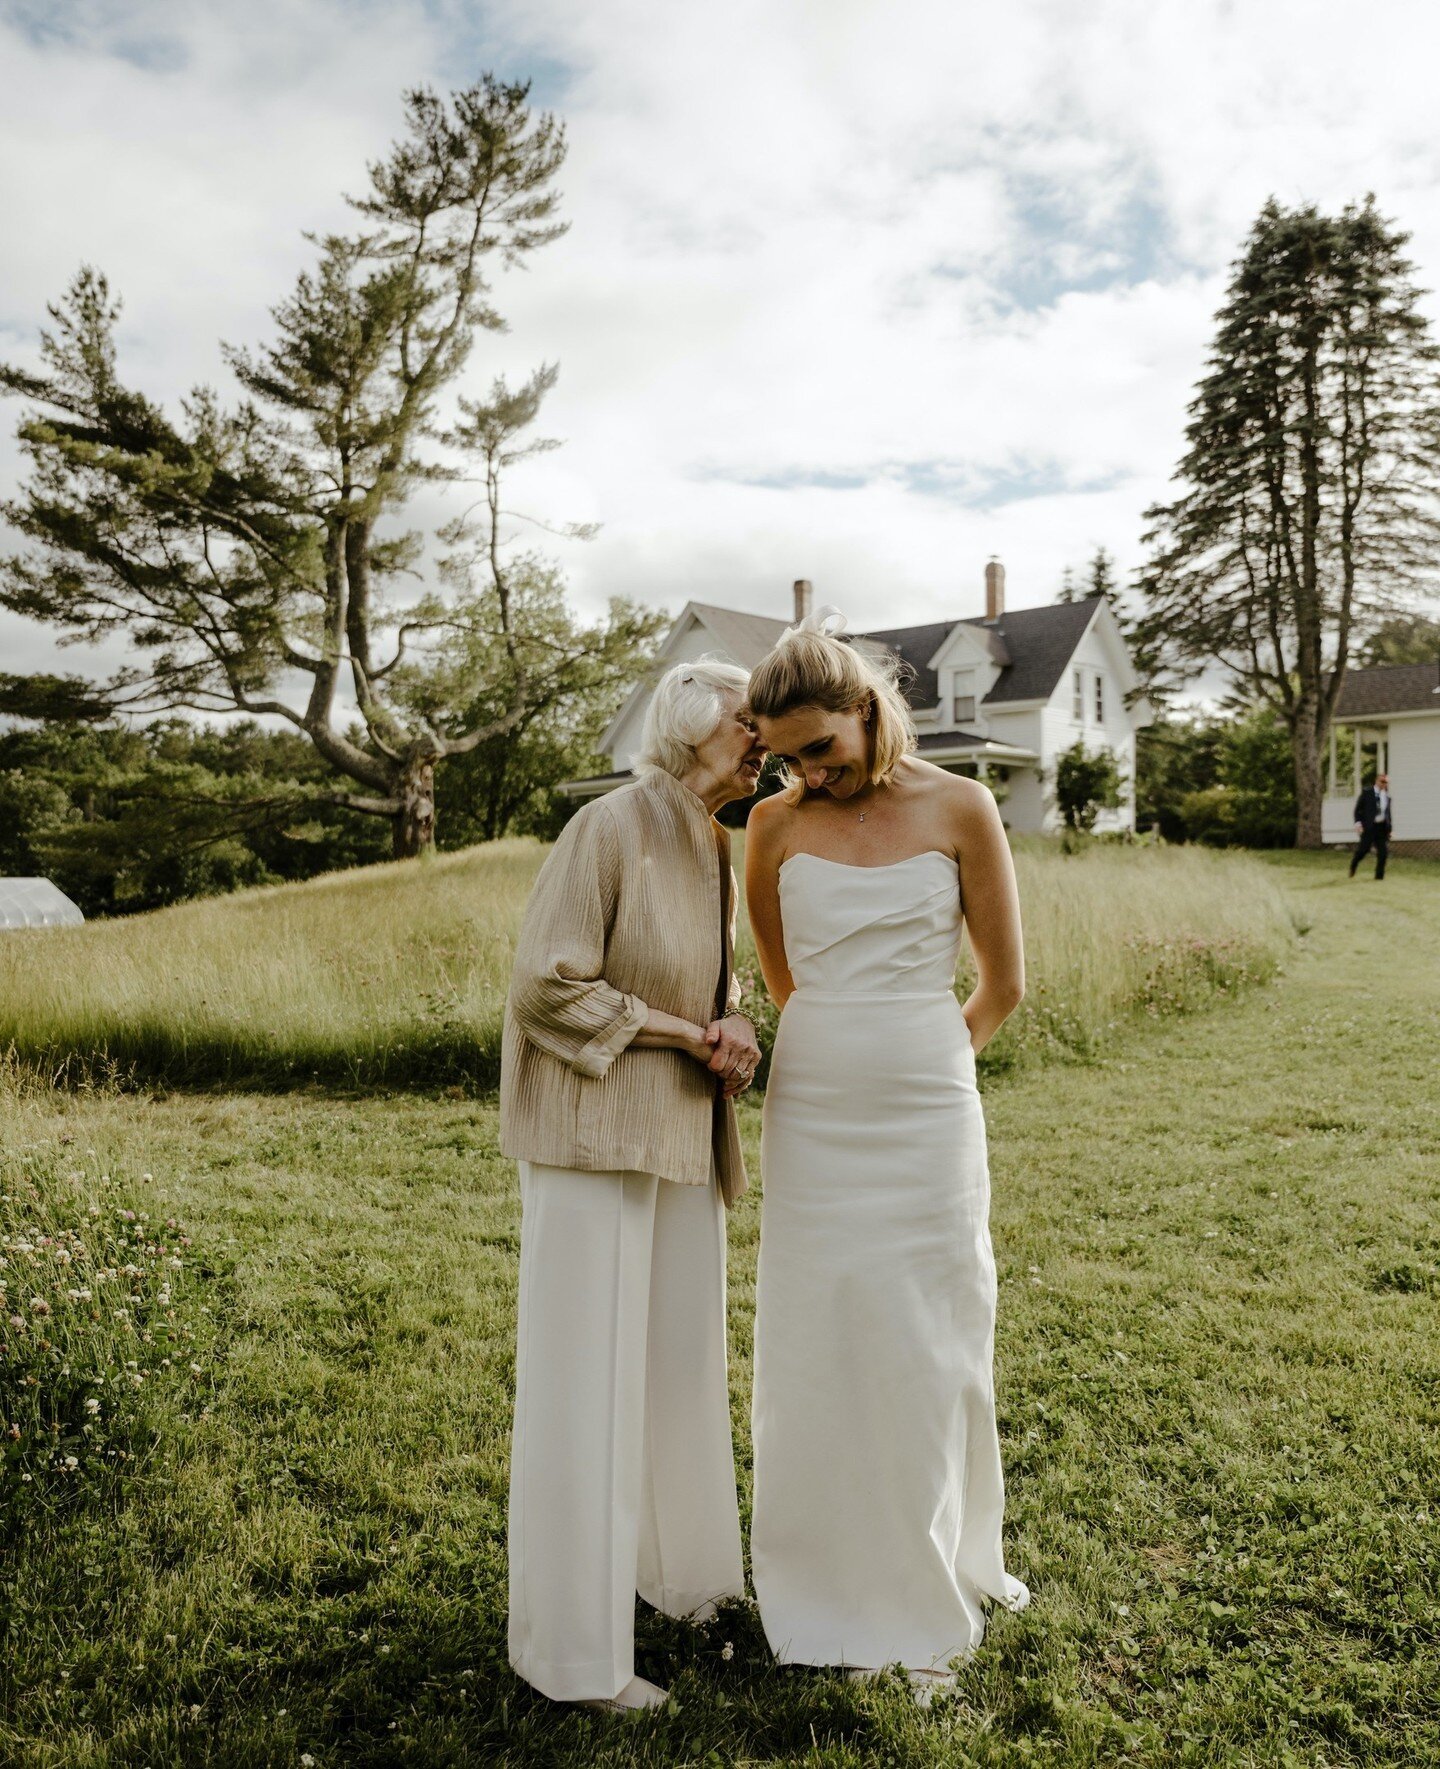 Wedding day secrets in June ✨️⁠
⁠
Photo by @katelynmallettphoto of @smit_m ⁠
.⁠
.⁠
.⁠
.⁠
.⁠
.⁠
.⁠
#wanderwoodmaine #maine #thewaylifeshouldbe  #wedmaine #farmwedding #barnwedding #mainefarms #mainelife #lovemaine #themainemag #livemaine #visitmaine #